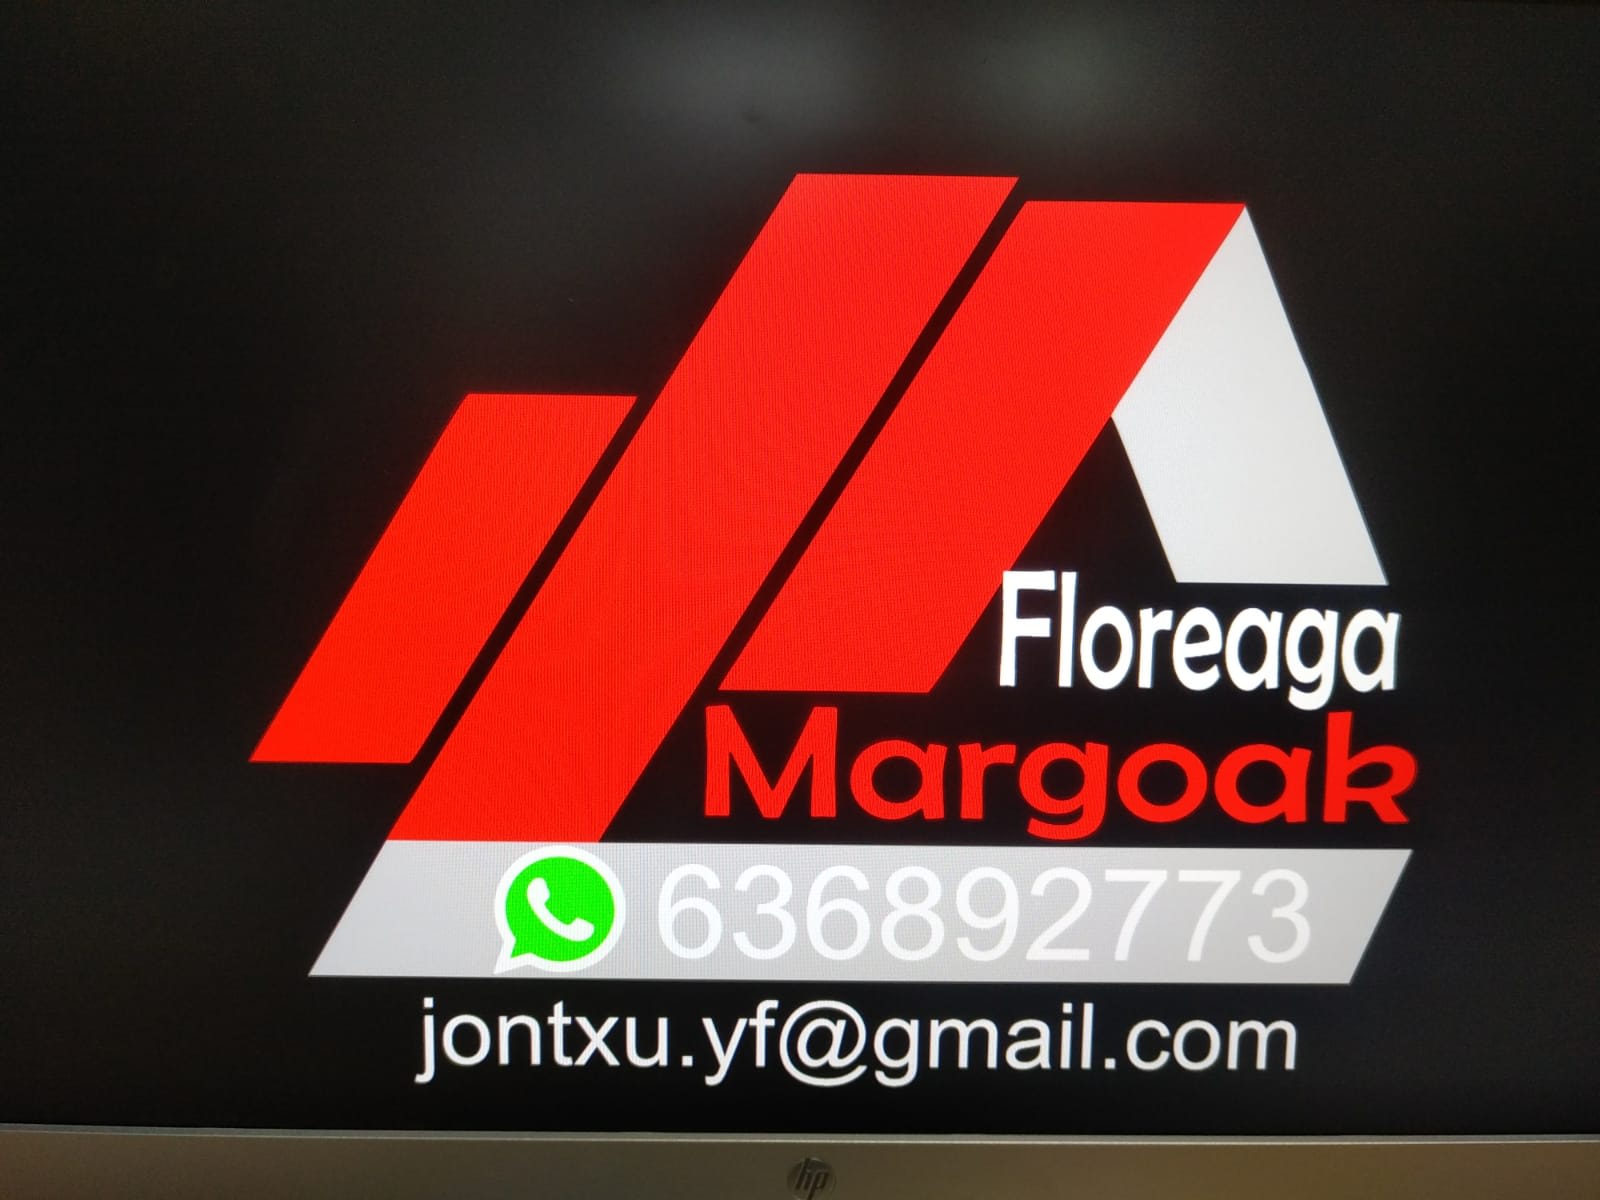 Floreaga Margoak